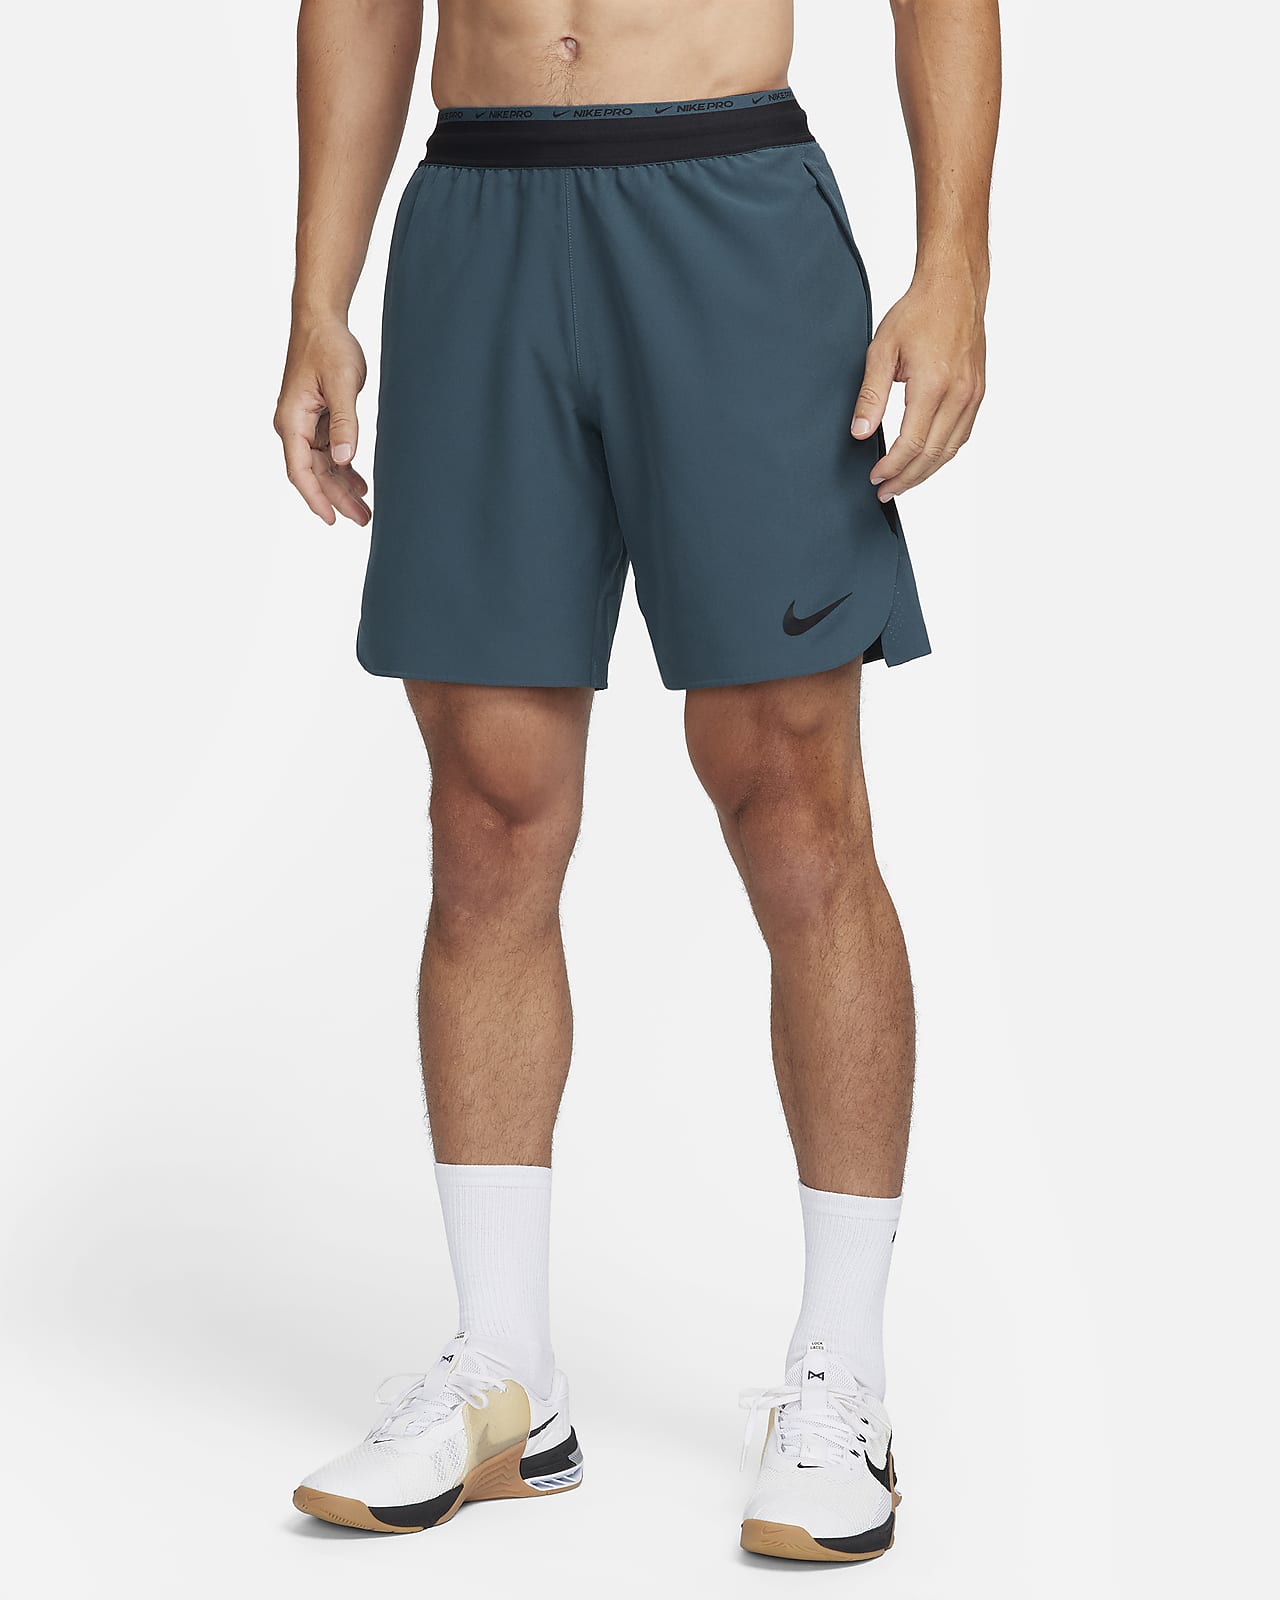 Nike Dri-FIT Flex Rep Pro Collection Pantalón corto de entrenamiento sin forro de 20 cm - Hombre